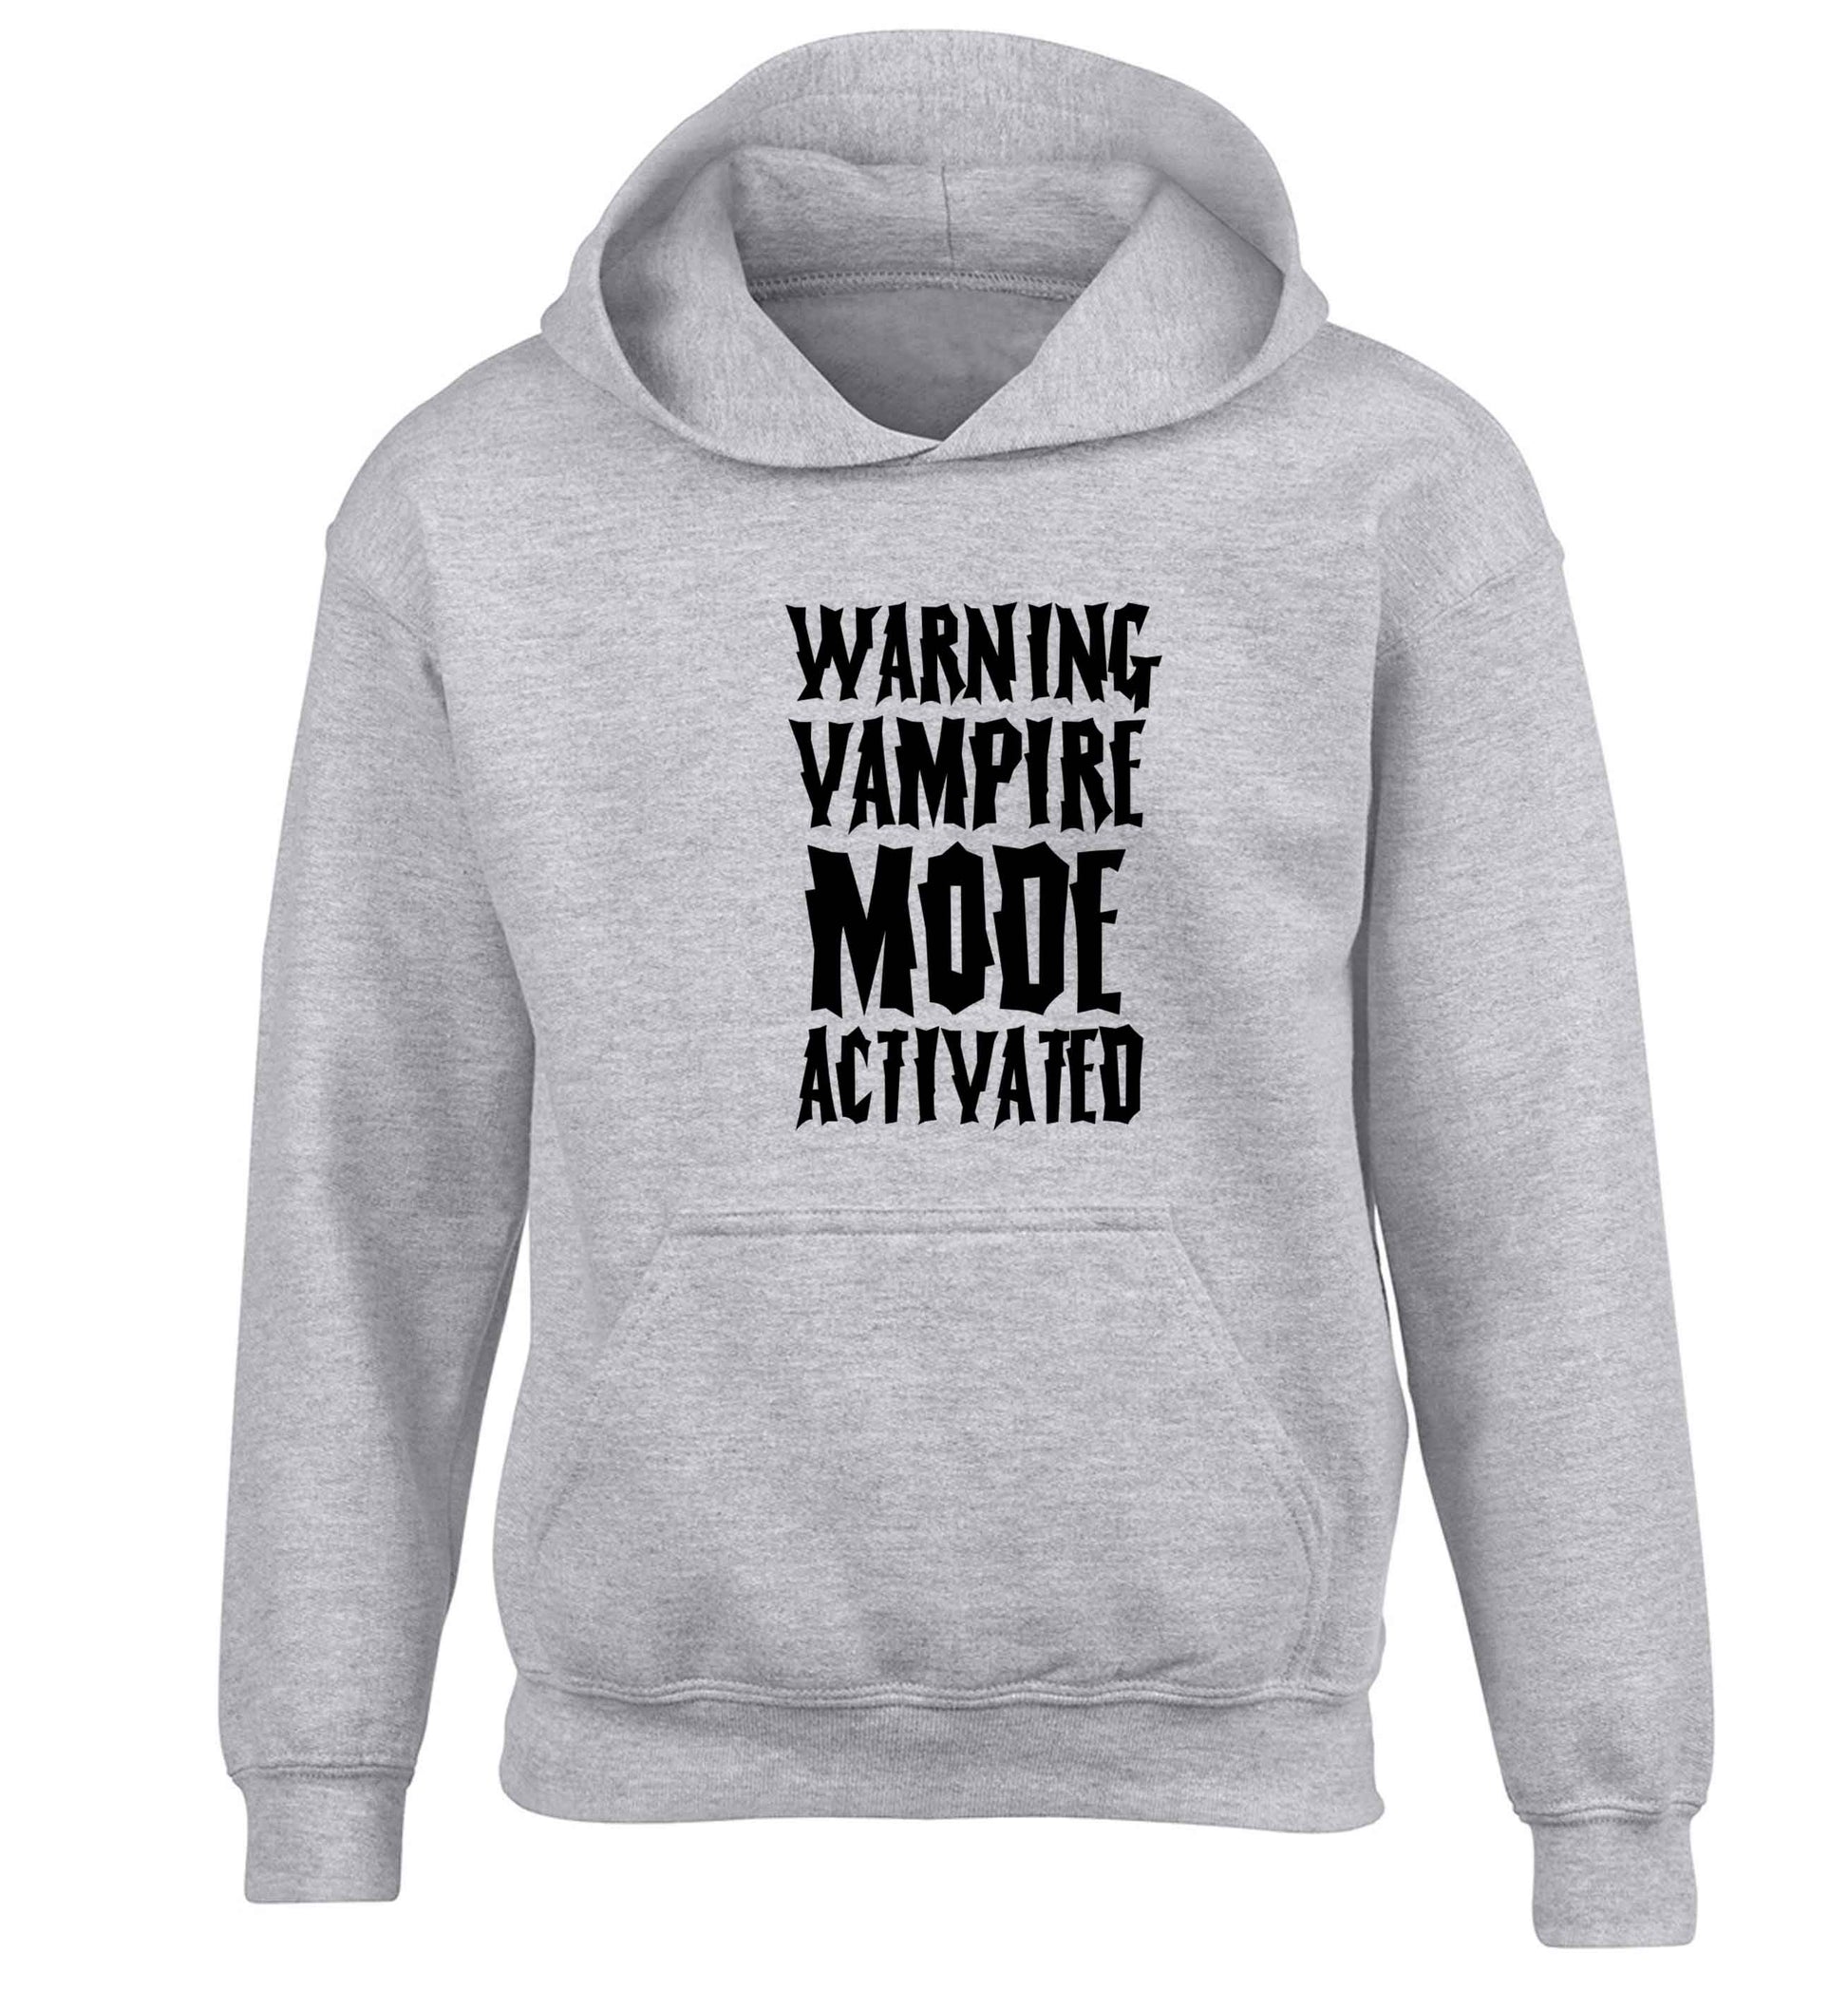 Warning vampire mode activated children's grey hoodie 12-13 Years